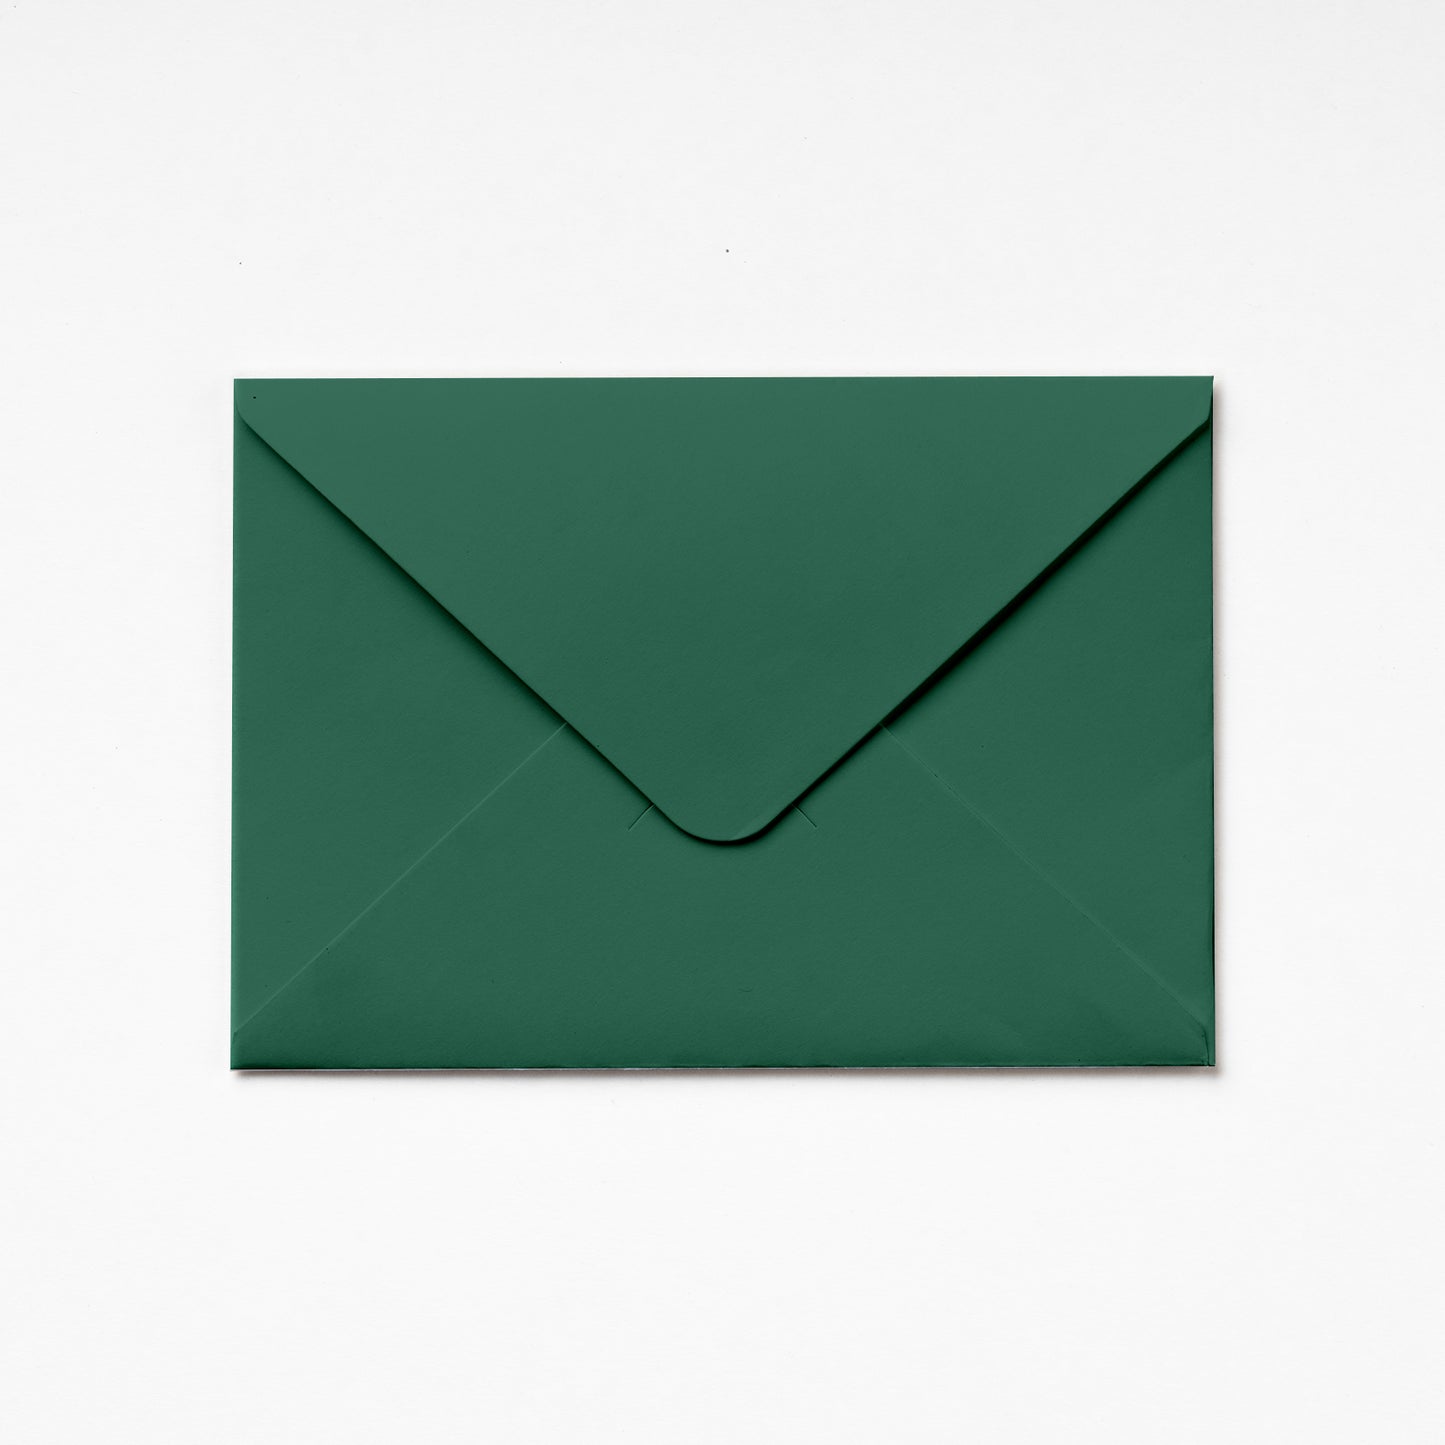 A6 Envelope - Leaf